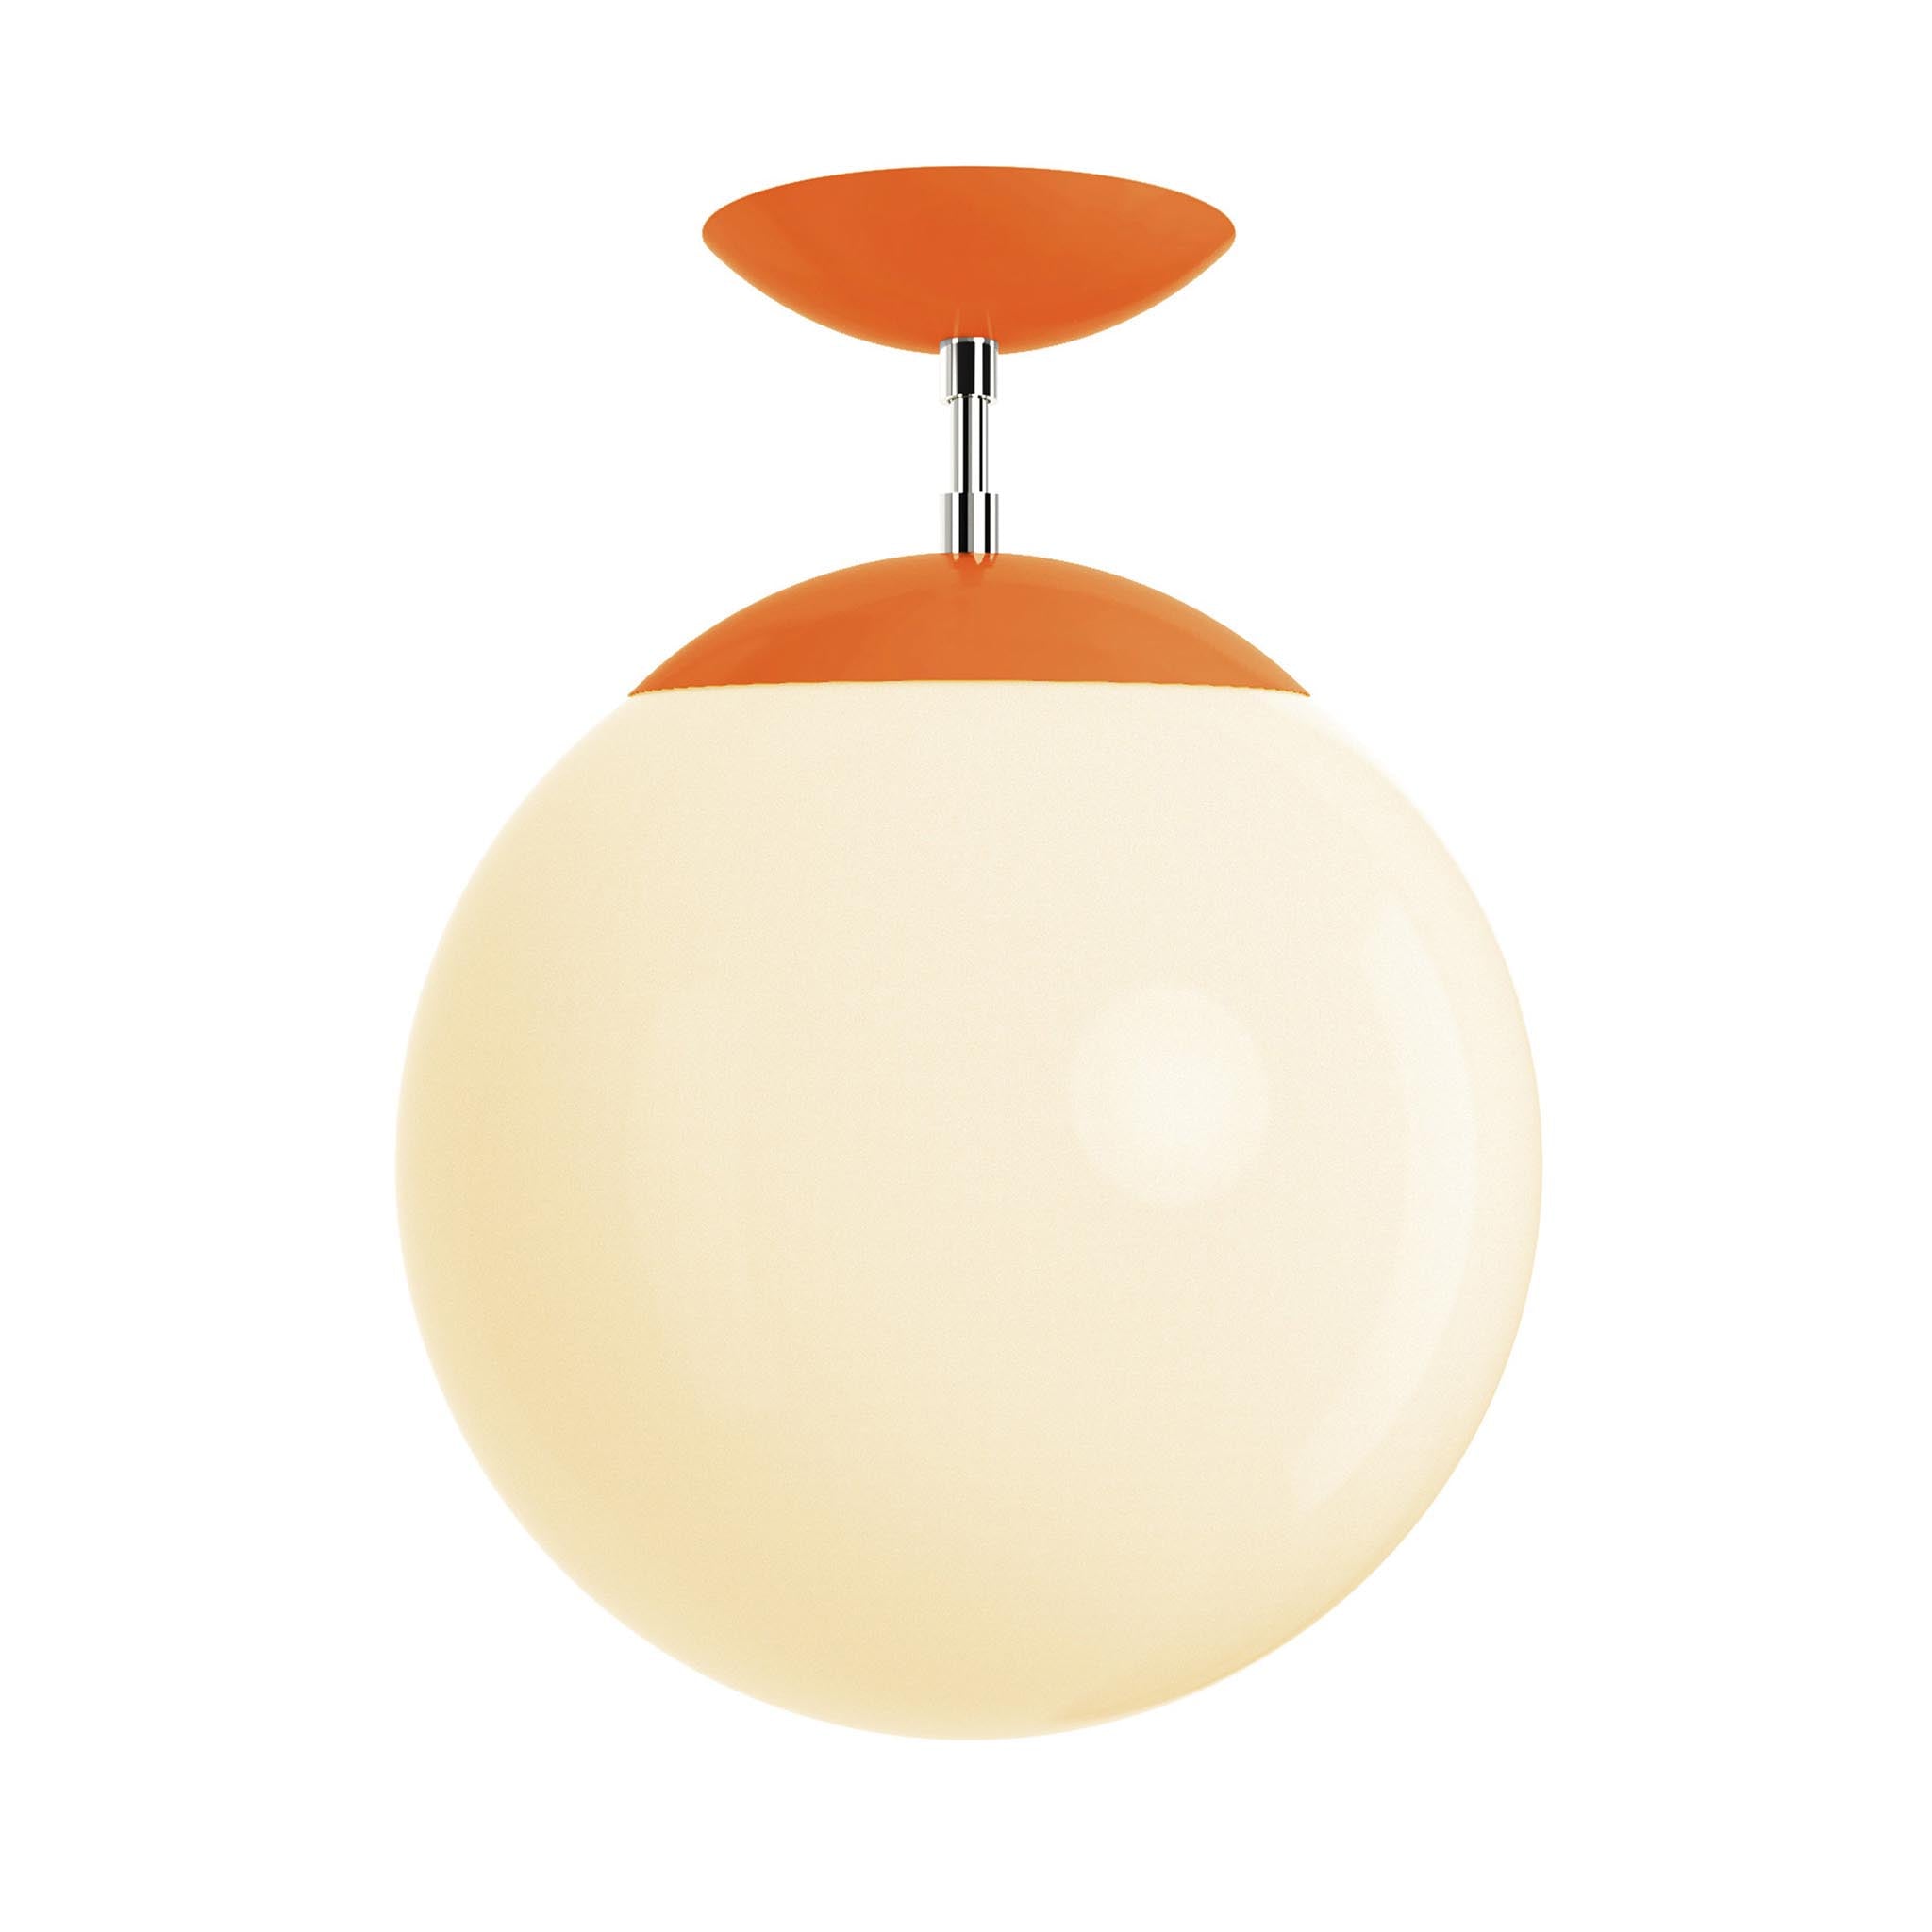 Polished nickel and orange cap globe flush mount 12" dutton brown lighting